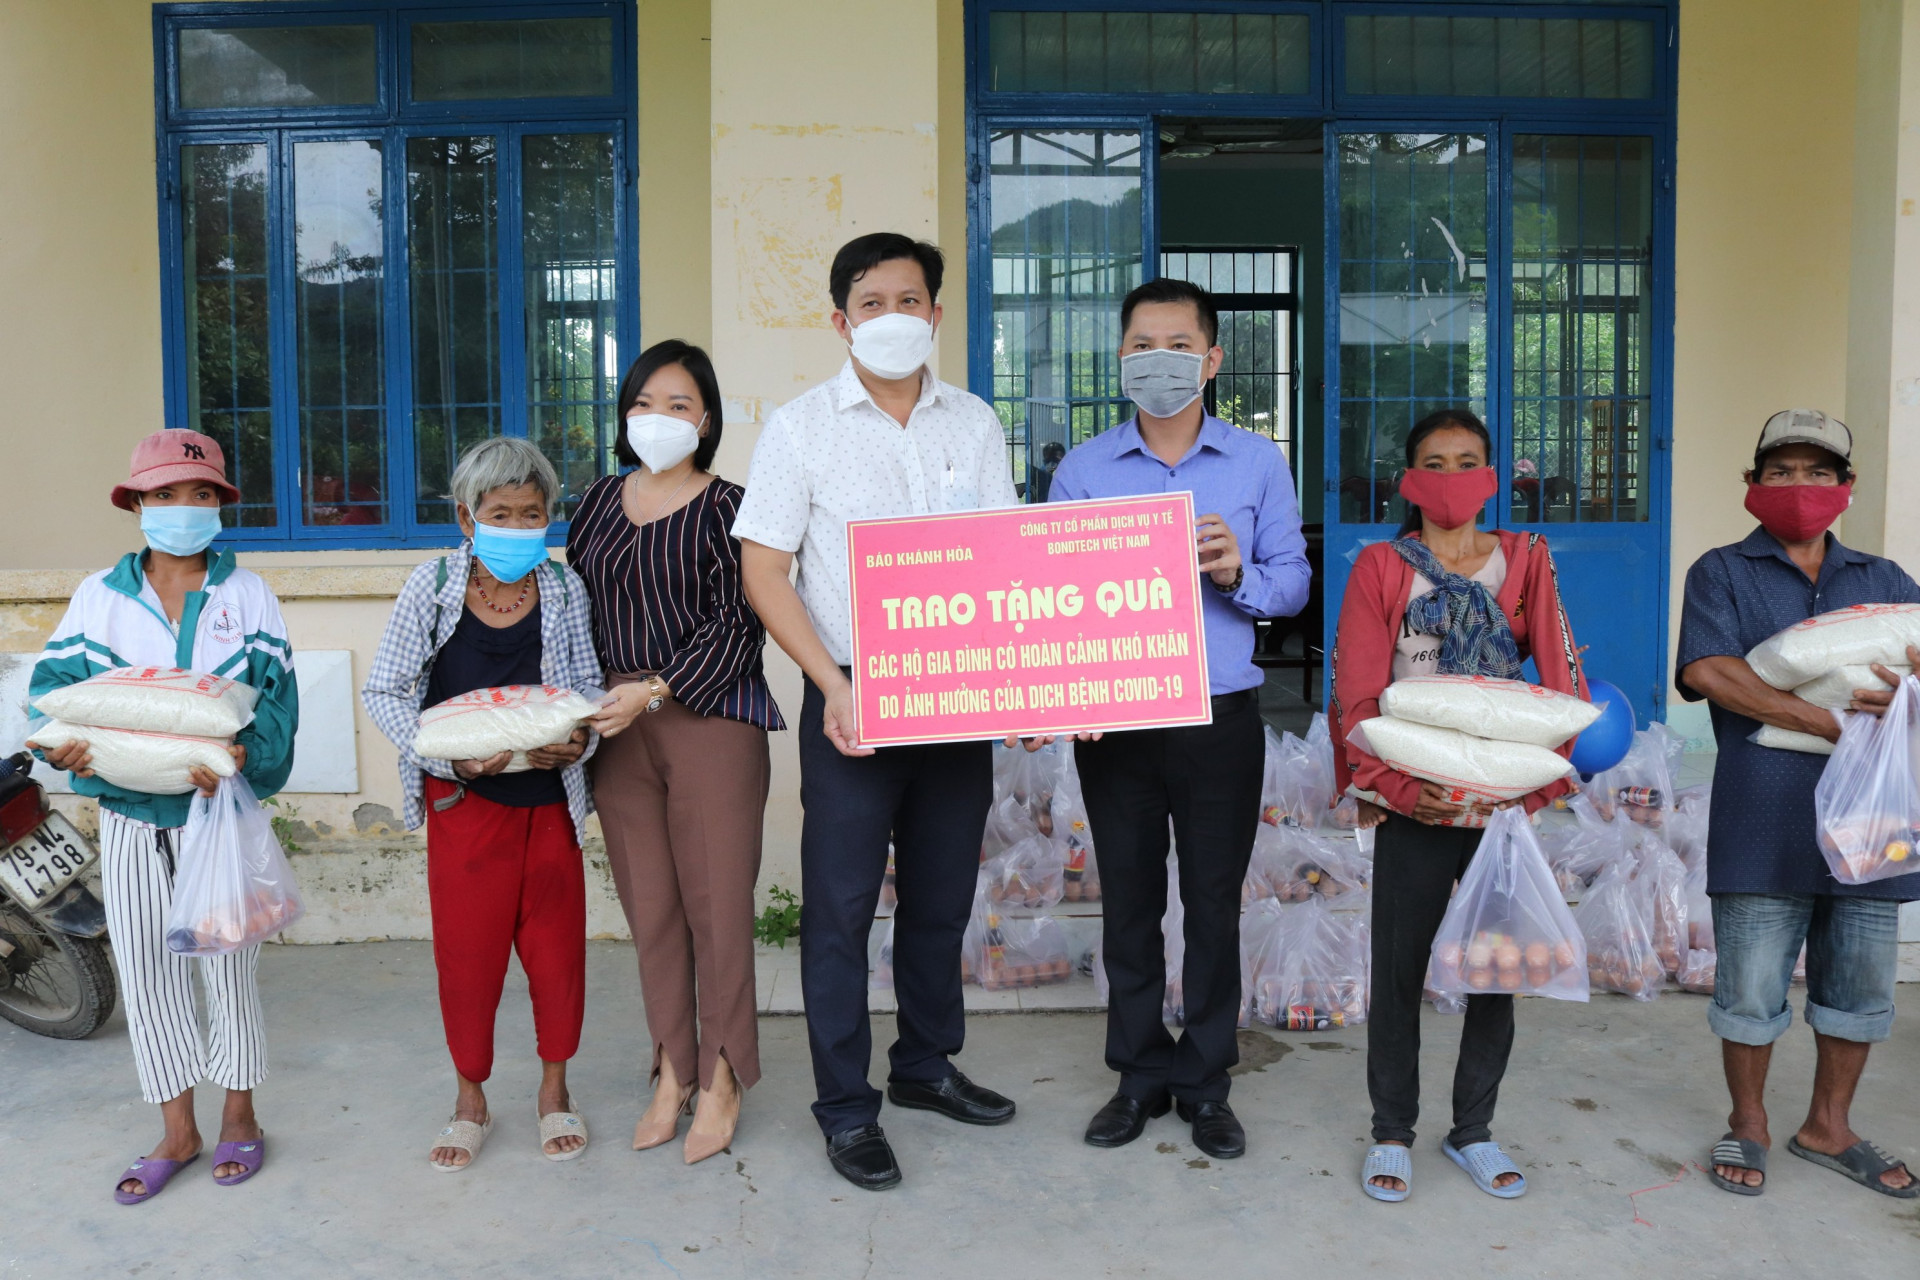 Báo Khánh Hòa phối hợp với Công ty Cổ phần Dịch vụ Y tế Bondtech Việt Nam tặng quà cho người dân hoàn cảnh khó khăn tại xã Ninh Tân.